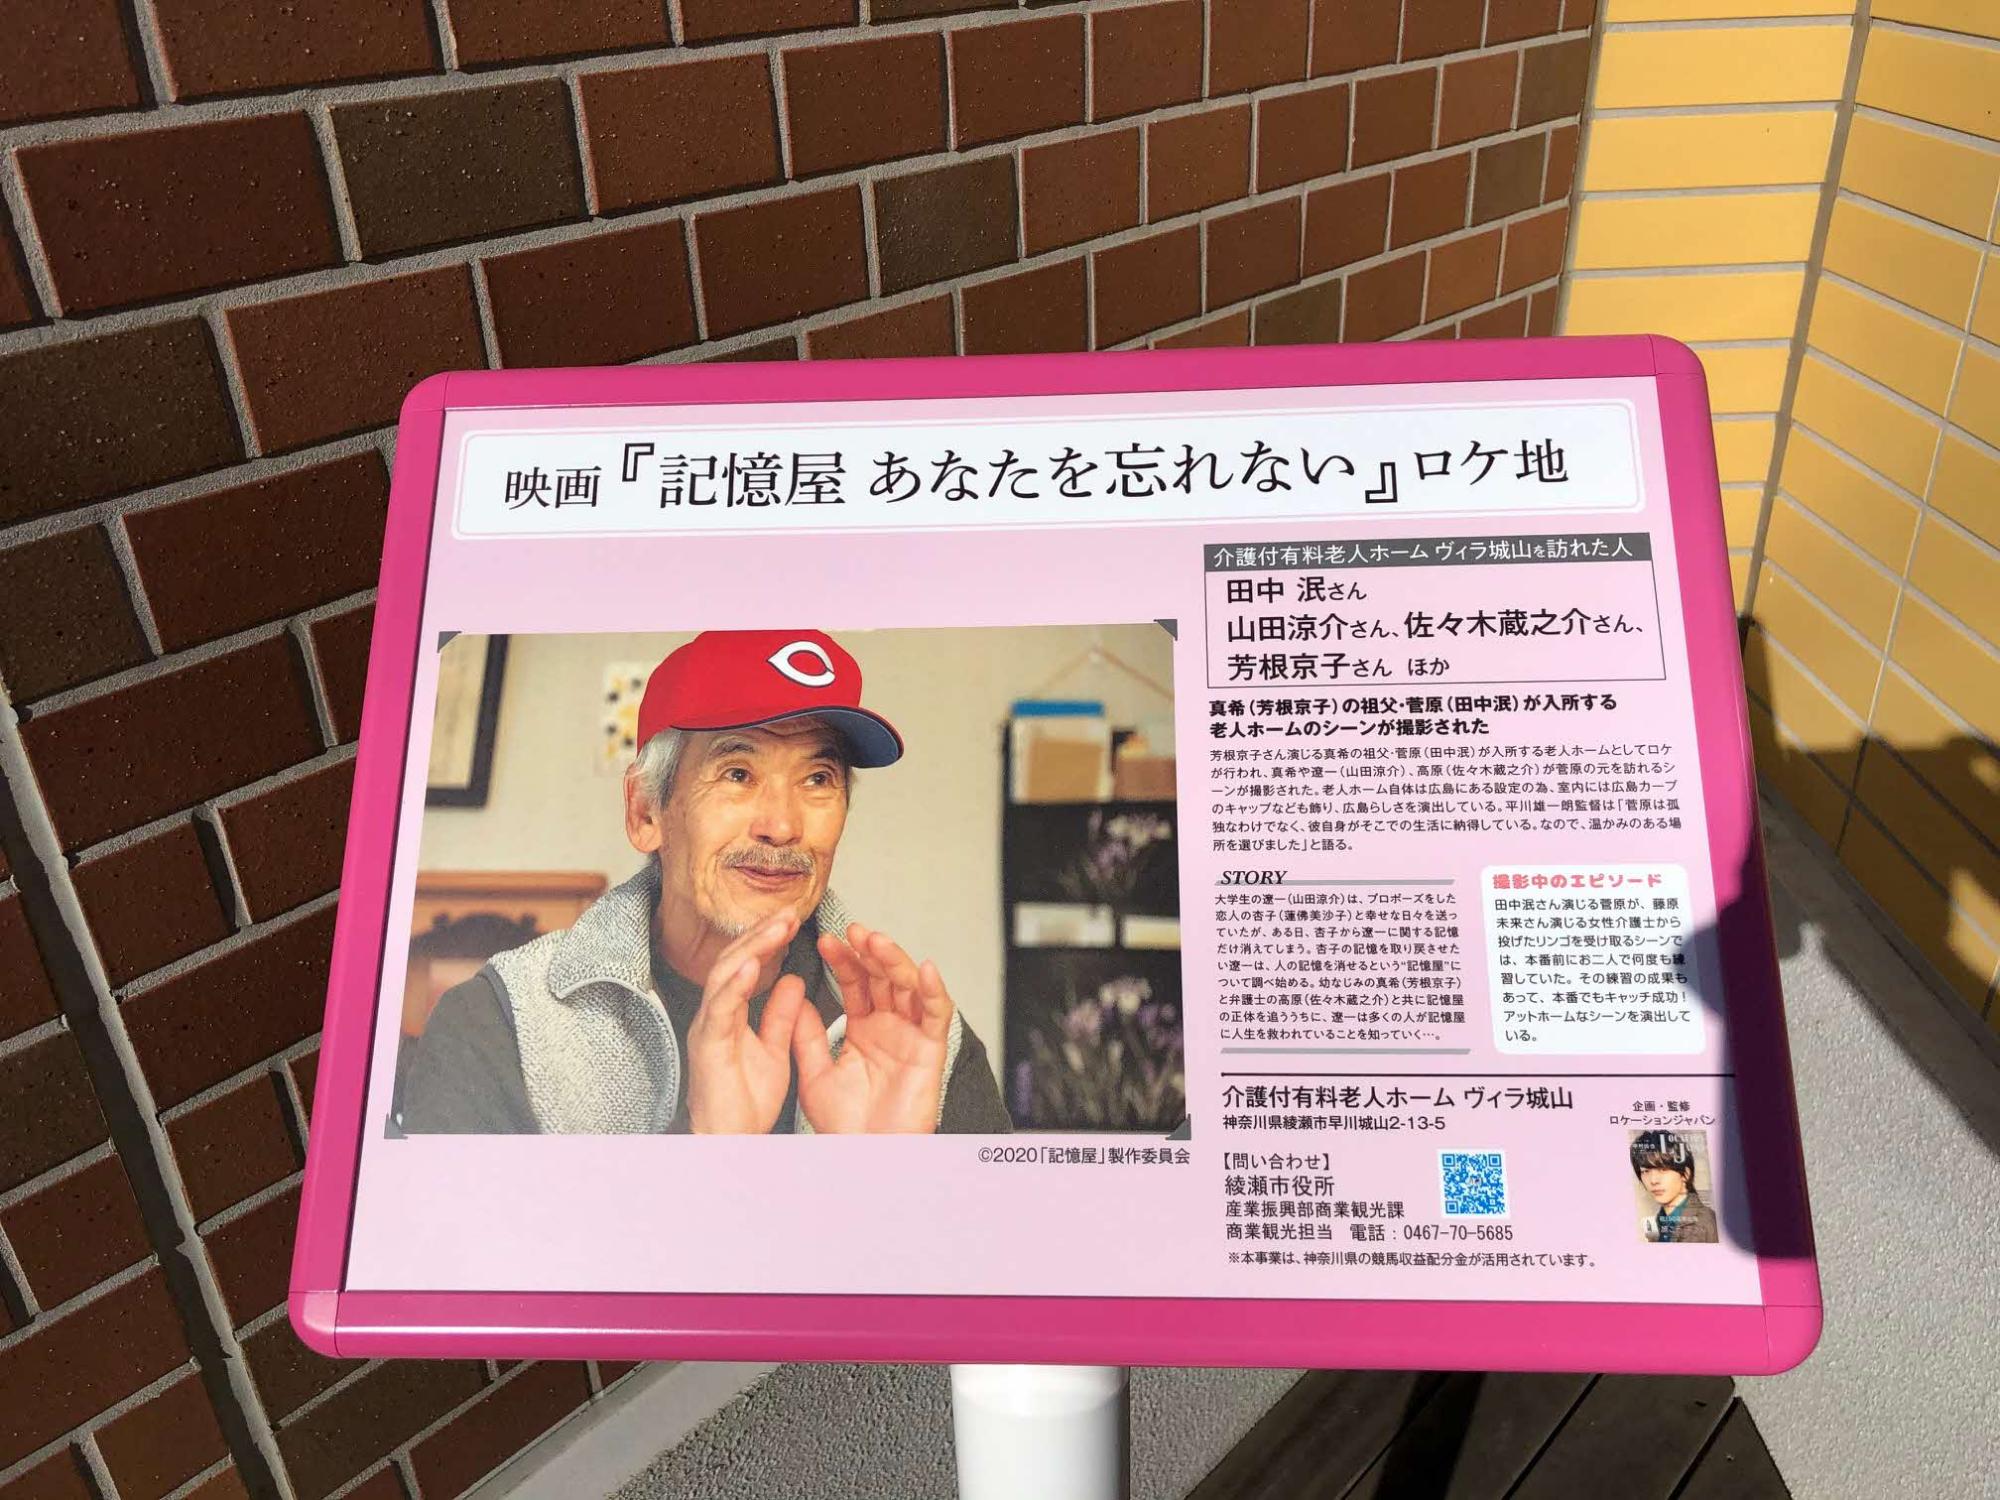 実際にヴィラ城山で撮影された広島東洋カープの帽子をかぶった田中泯さんが写ったシーンの写真や撮影中のエピソードなどがかかれているロケ地看板の写真